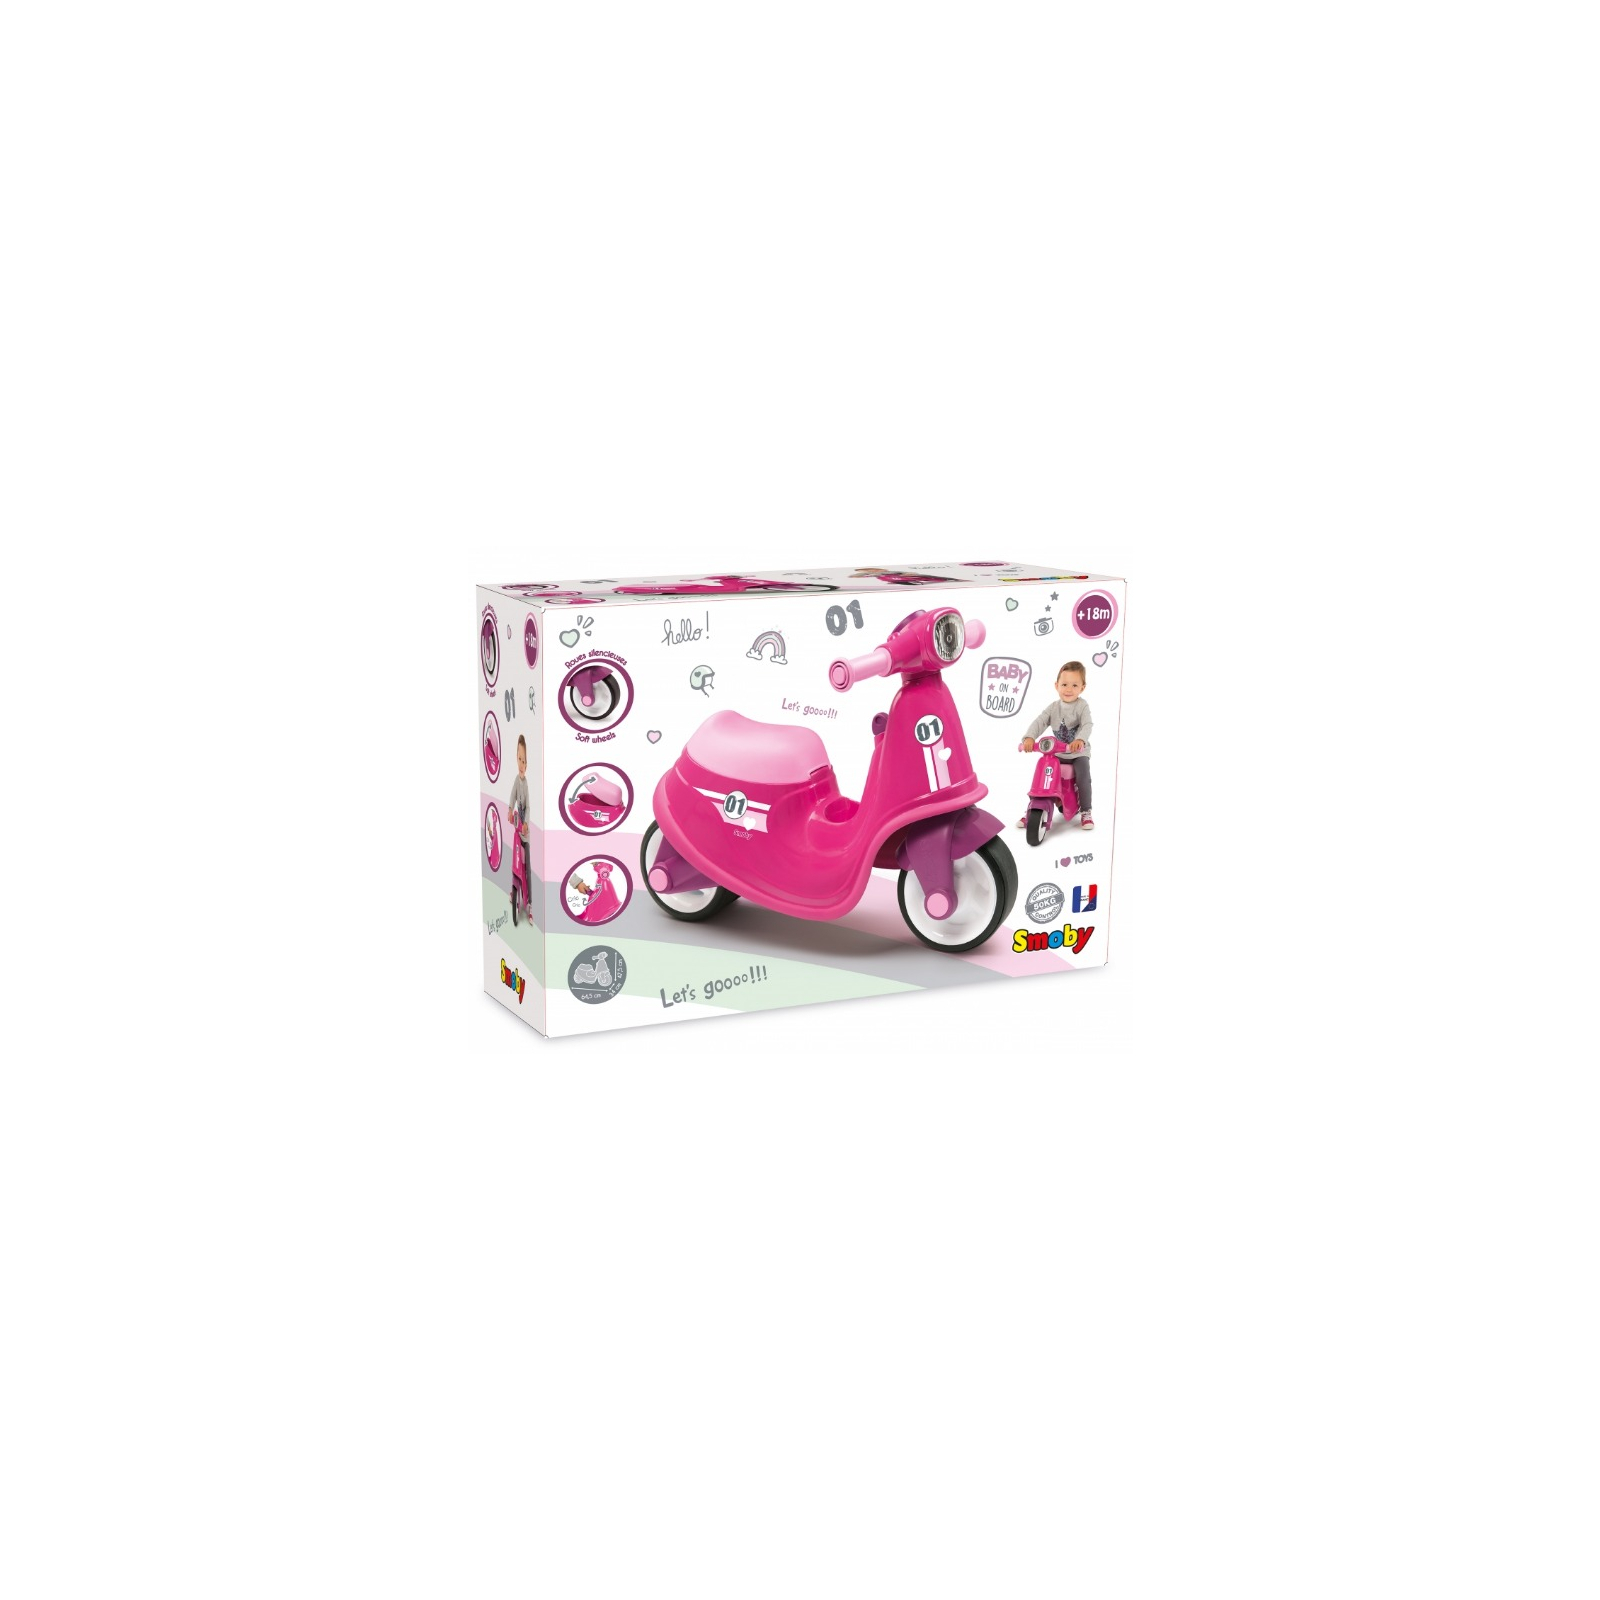 Беговел Smoby розовый (721002) изображение 6